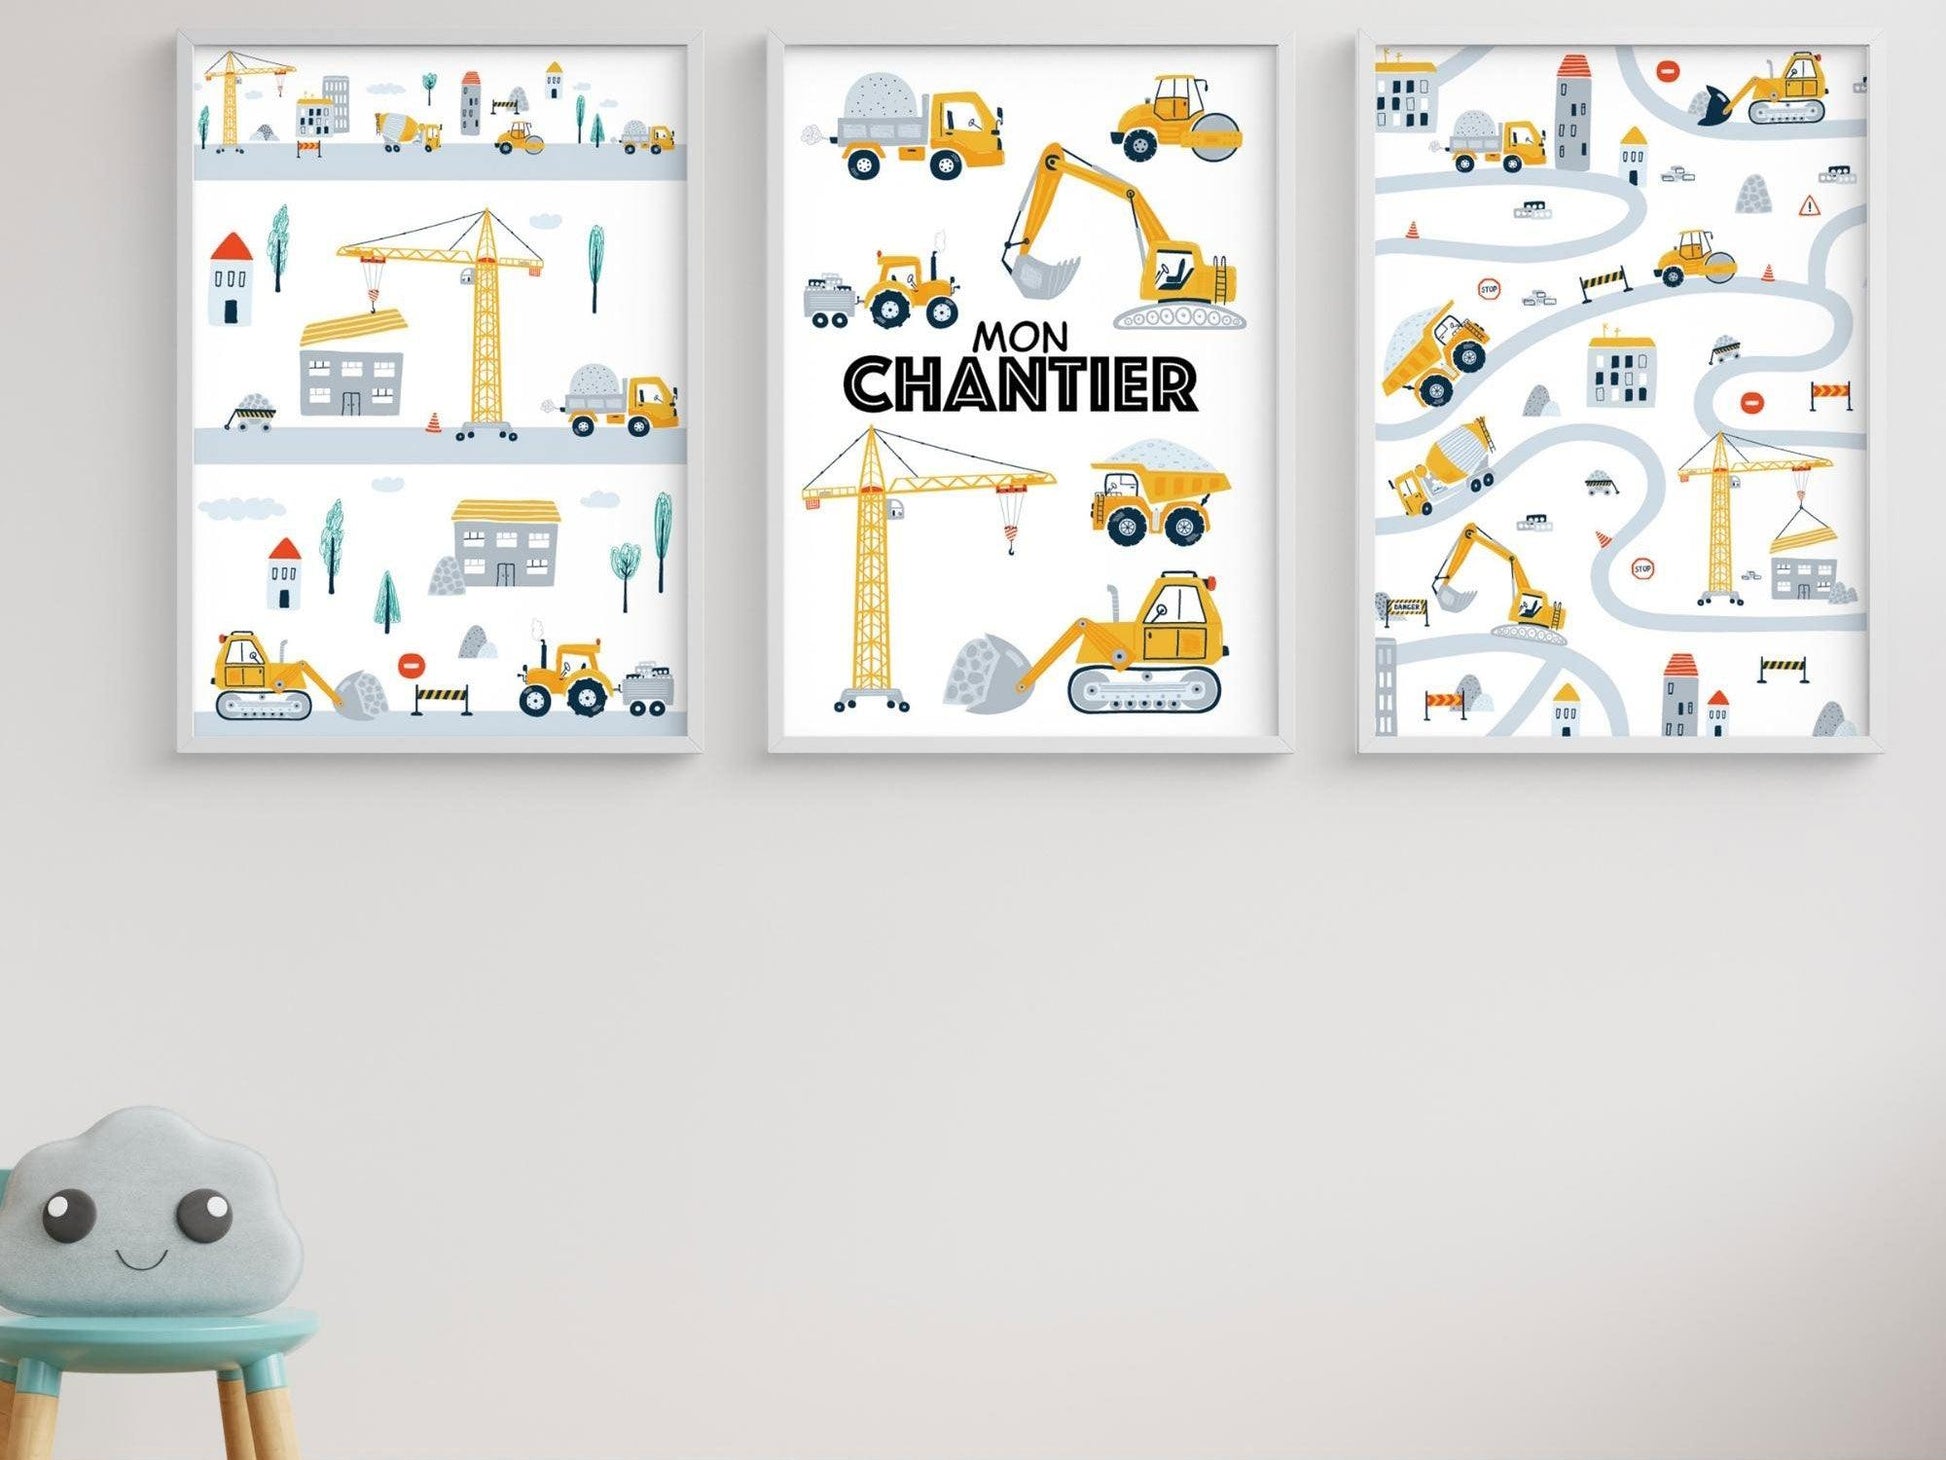 Lot affiches "Mon Chantier" avec camion pelleteuse pour chambre d'enfant - Imagine.affiche